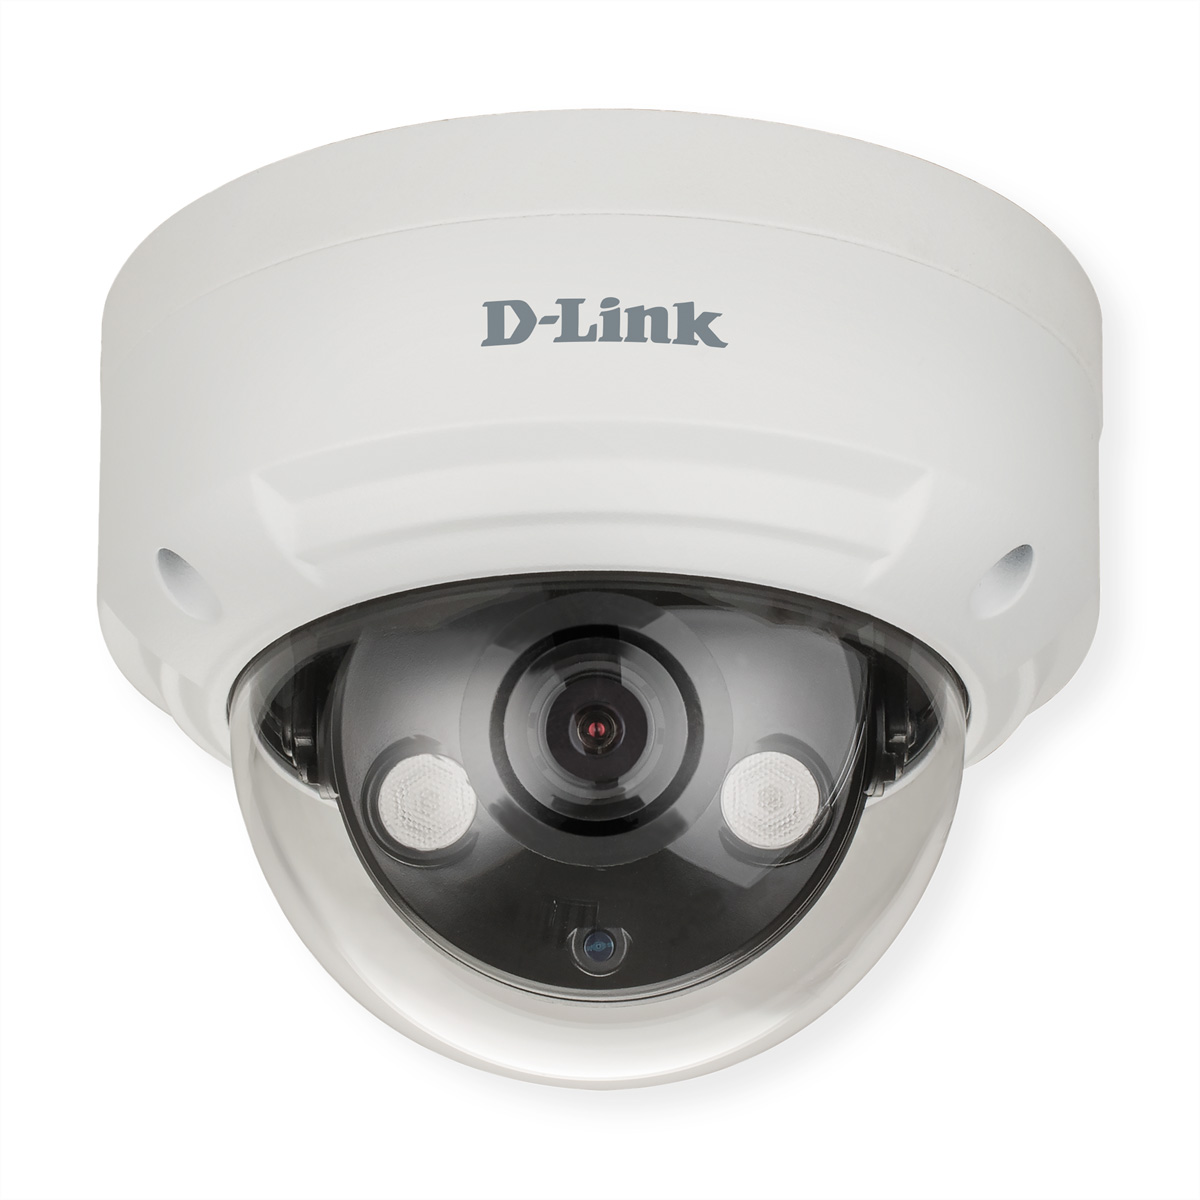 D-Link DCS-4614EK Vigilance 4MP H.265 Outdoor Dome Kamera